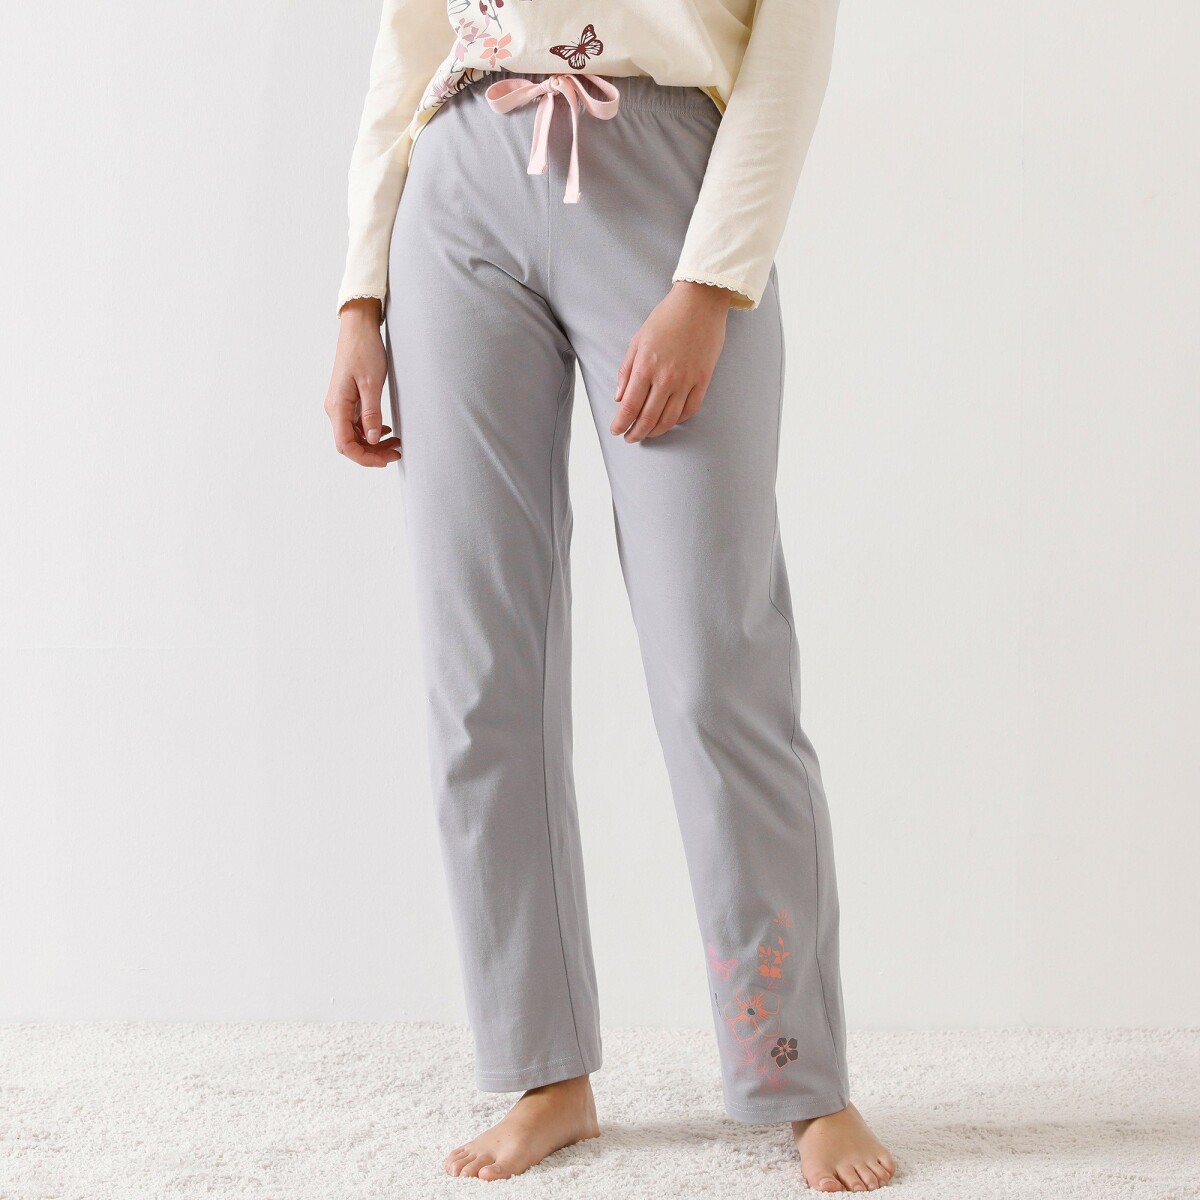 Pyžamové dlouhé kalhoty s potiskem